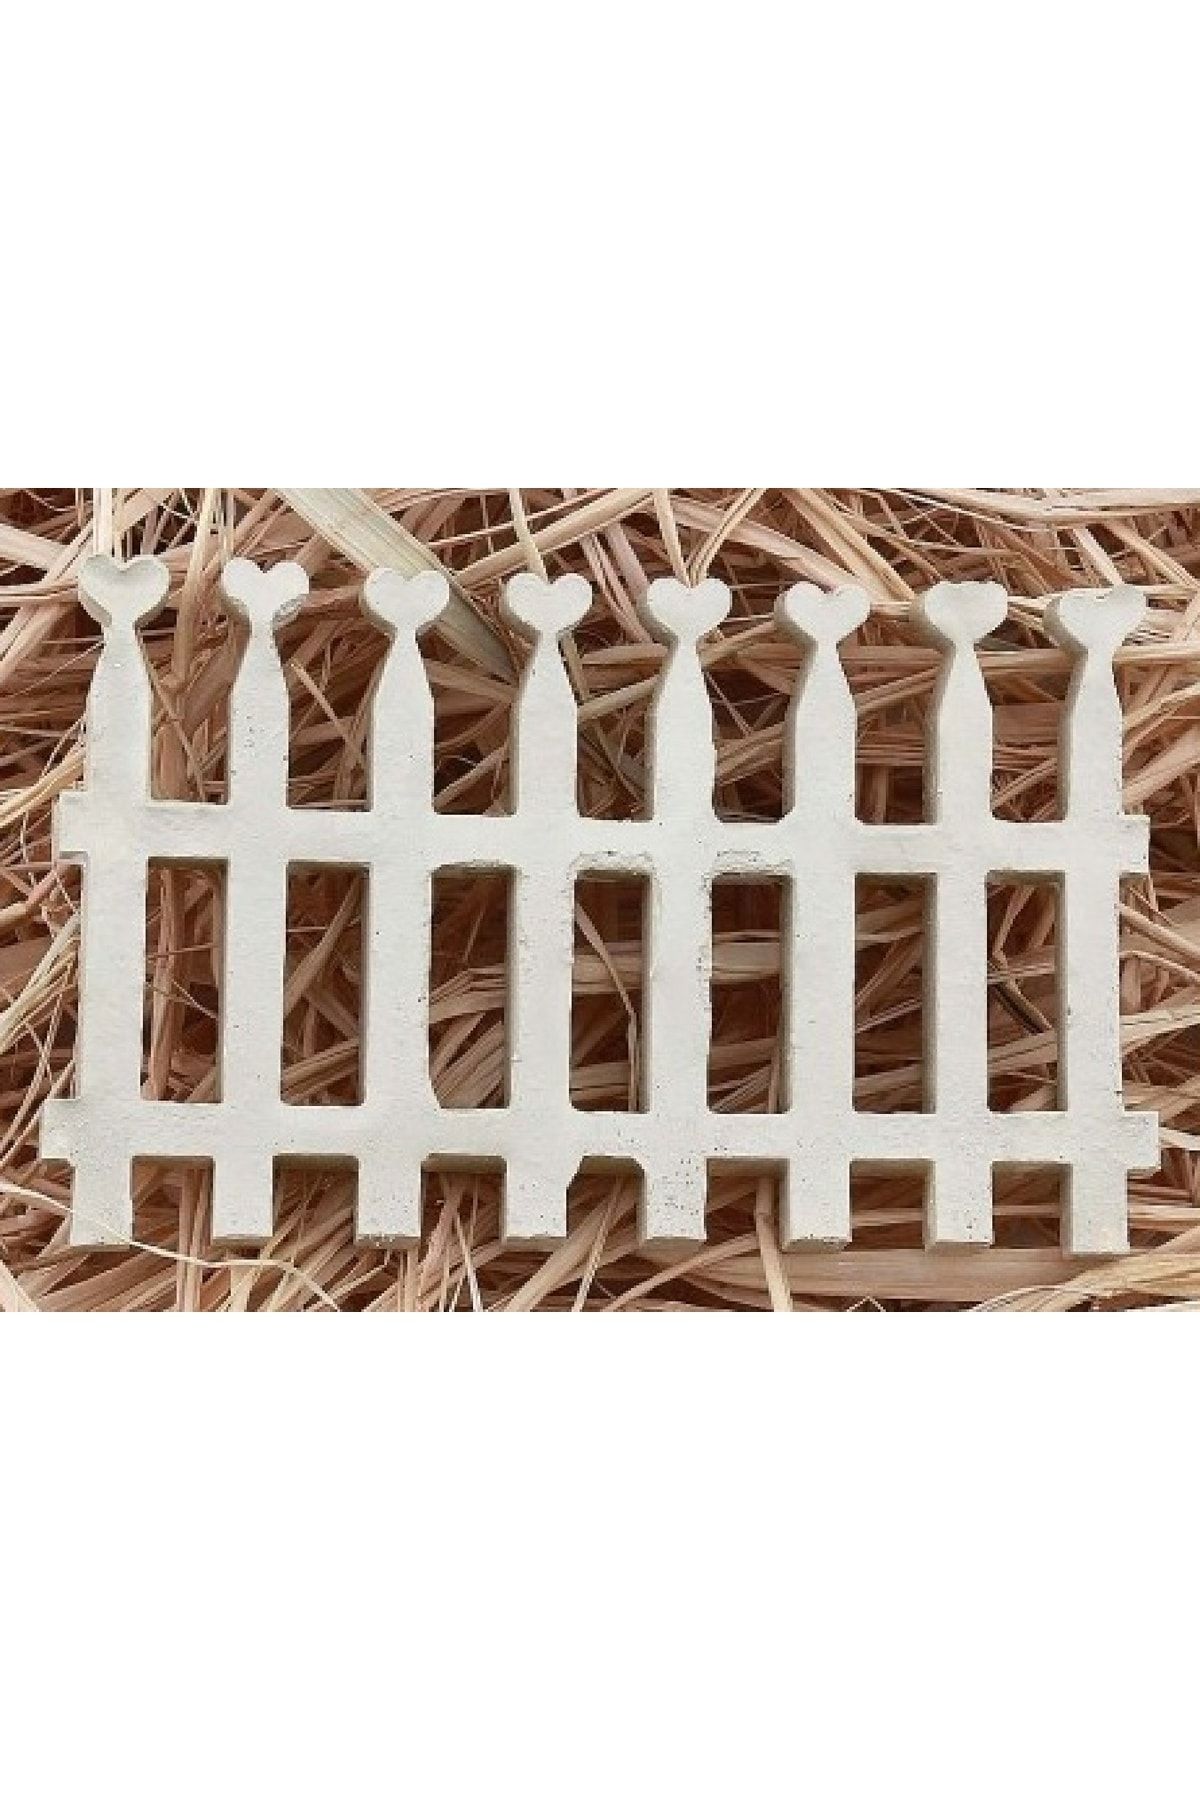 morlalem Pano Süsü Kalpli Çit Silikon Kalıp K-416, Kokulu Taş Sabun Alçı Mum Kalıbı